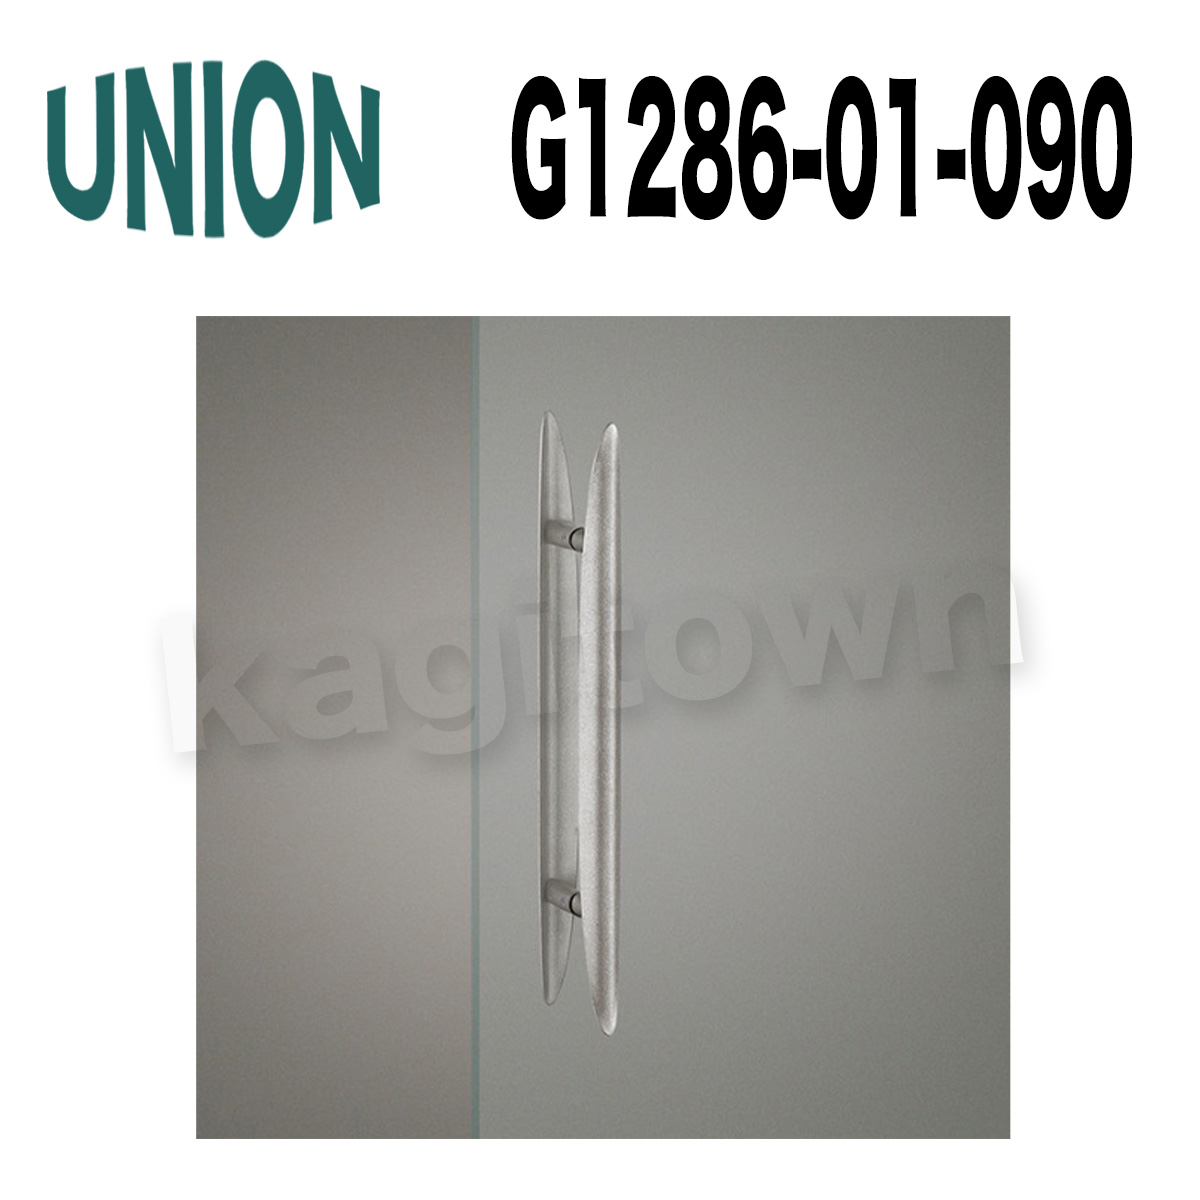 UNION【ユニオン】G1286-01-023[ドアハンドル]押し棒 ガラスドア